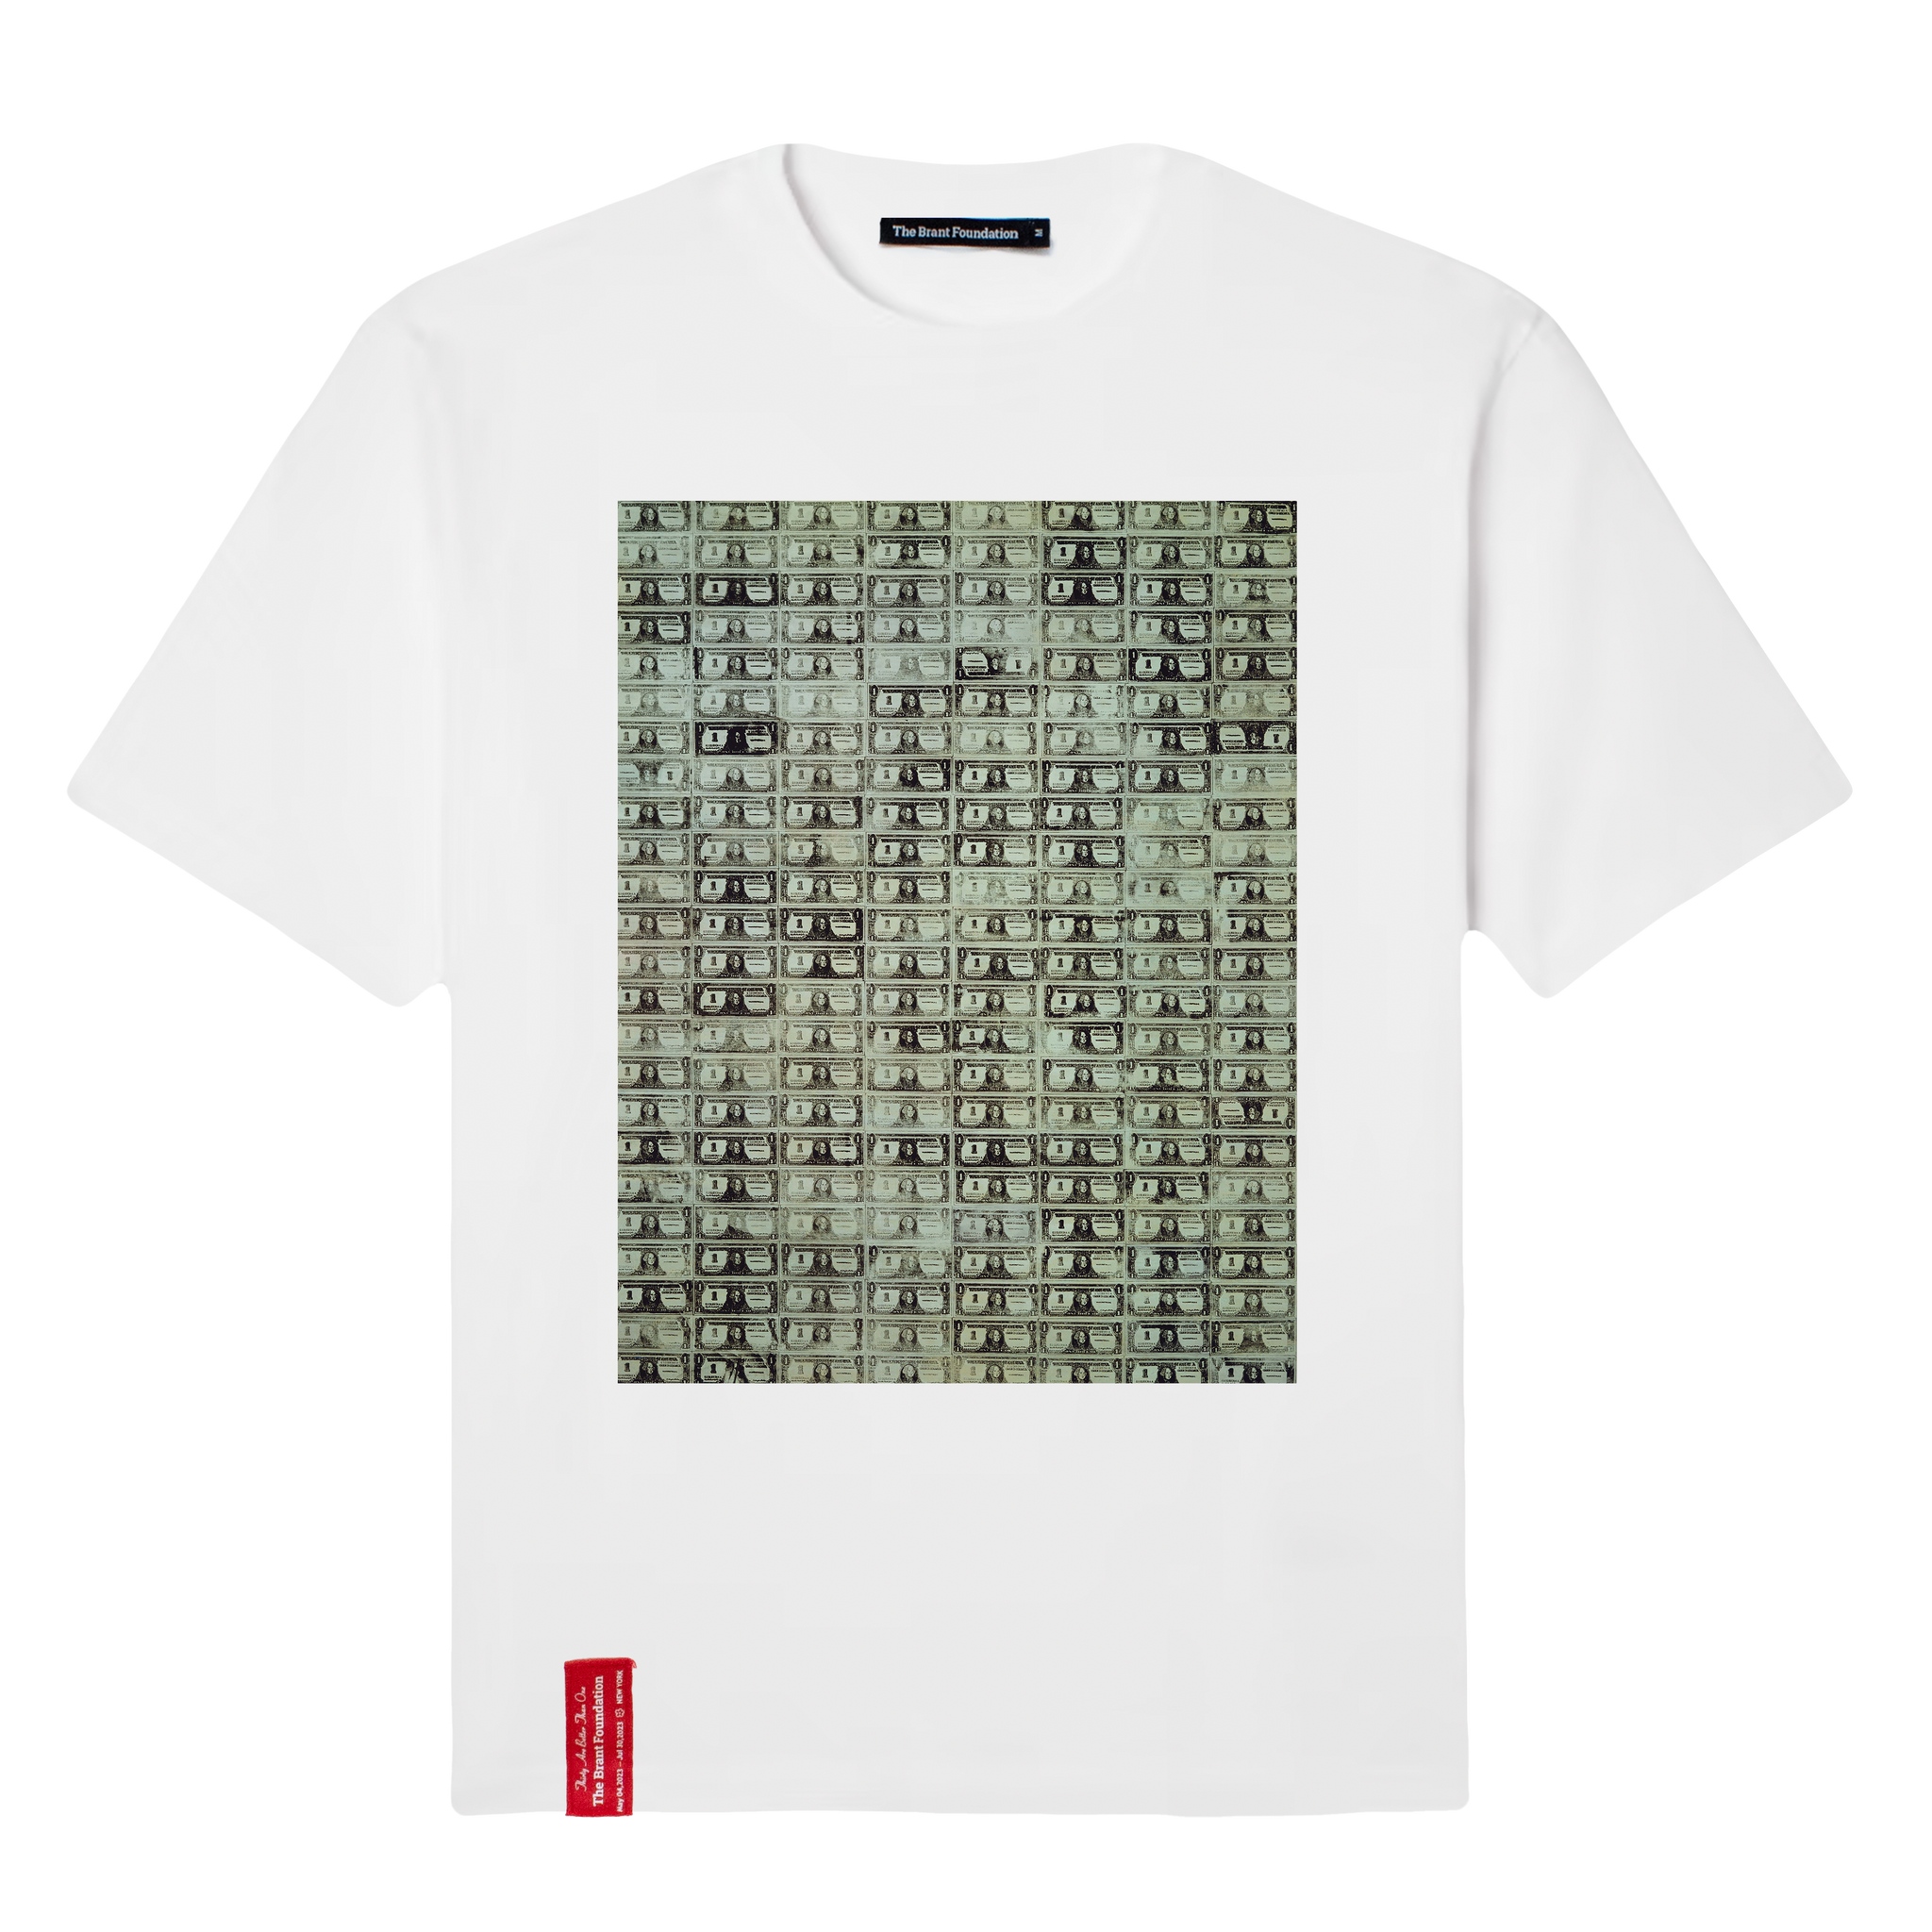 Andy Warhol "192 One Dollar Bills" T-shirt